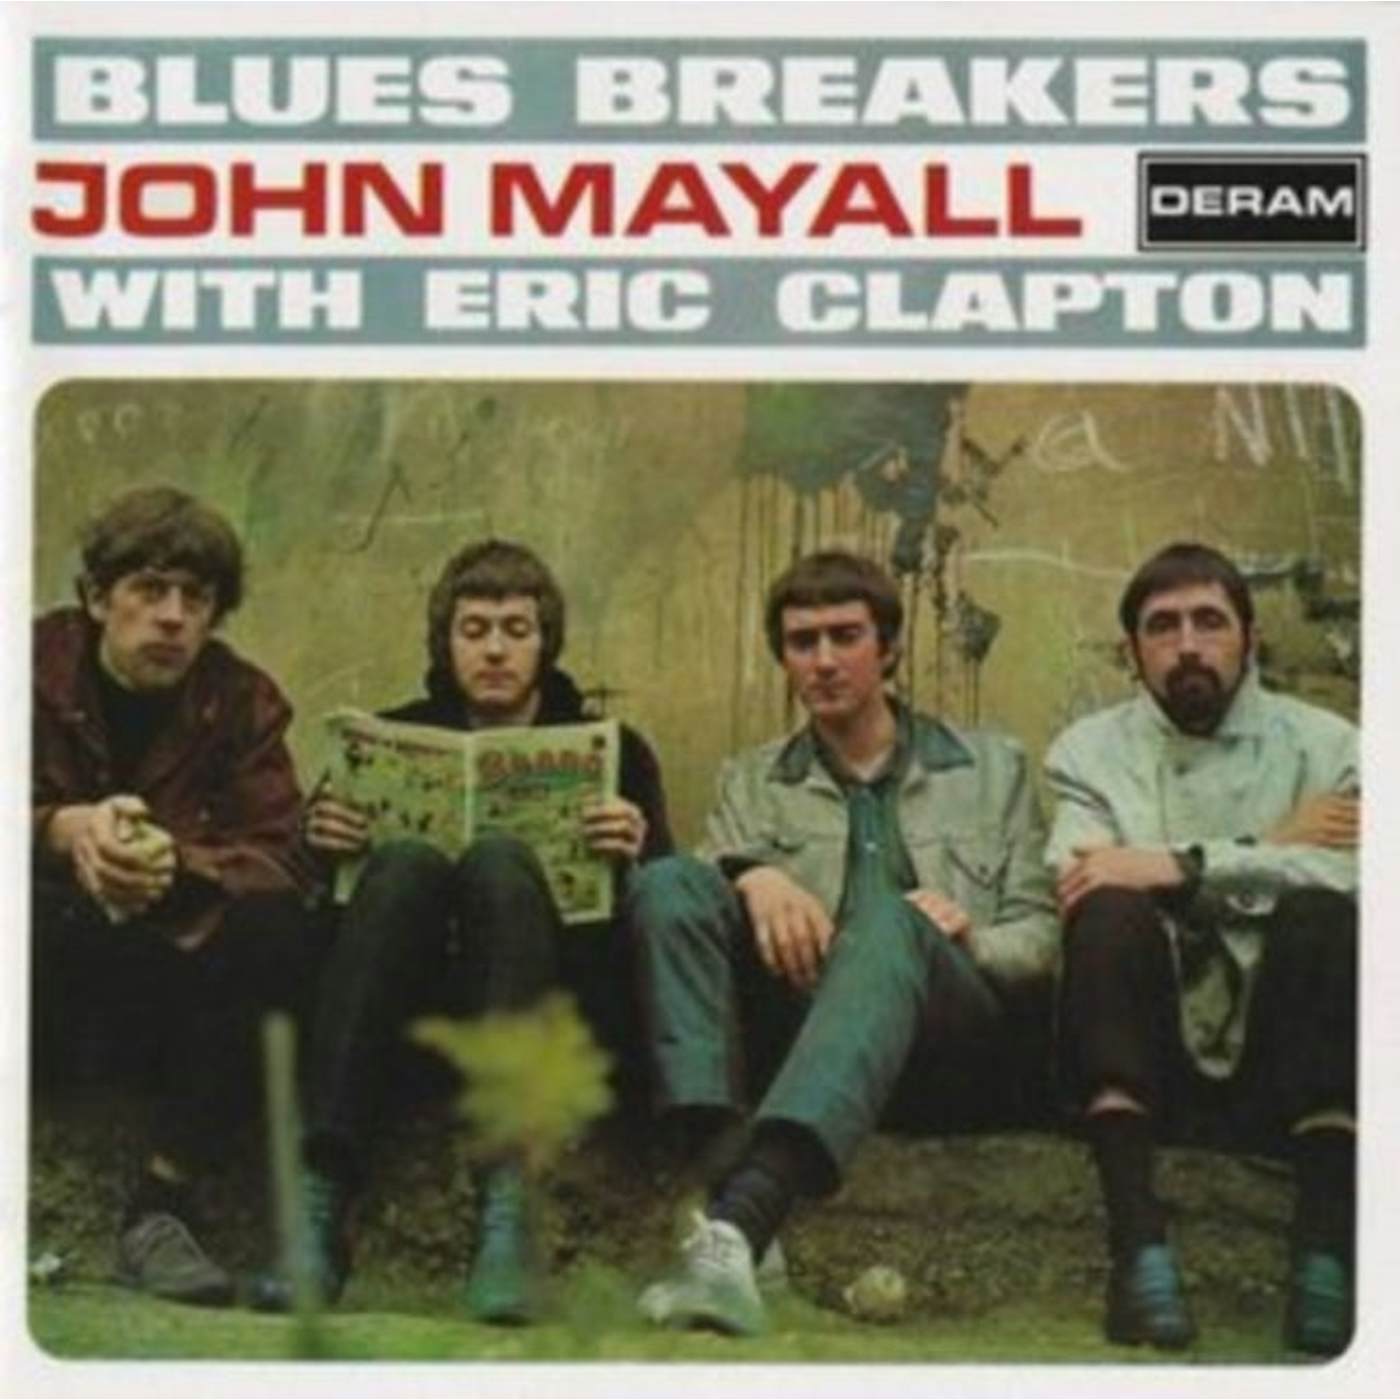 John Mayall & The Bluesbreakers CD - Blues Breakers